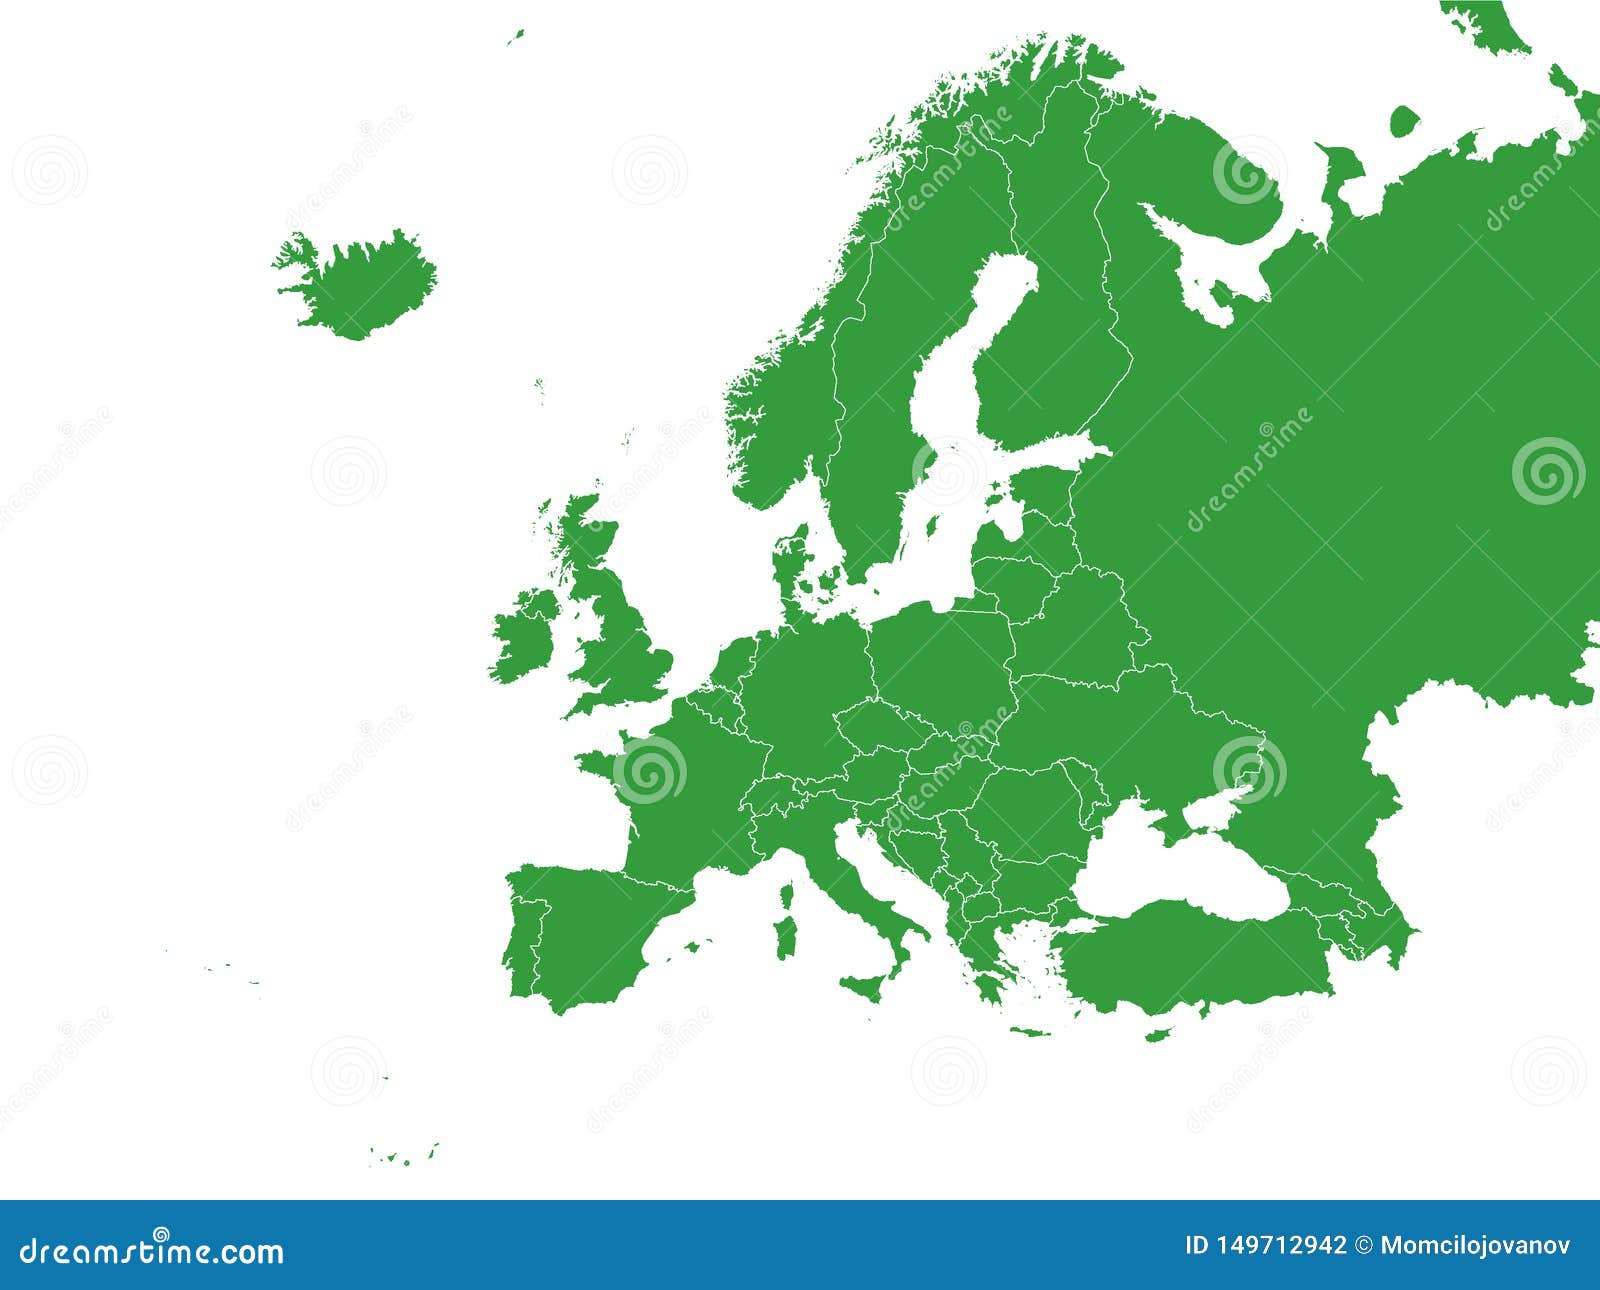 Bản đồ xanh của châu Âu như một lời khẳng định mạnh mẽ về mục tiêu phát triển bền vững của các quốc gia khu vực. Hãy đến với hình ảnh để khám phá về những nỗ lực và thành tựu của Châu Âu trong việc bảo vệ môi trường và nguồn tài nguyên.